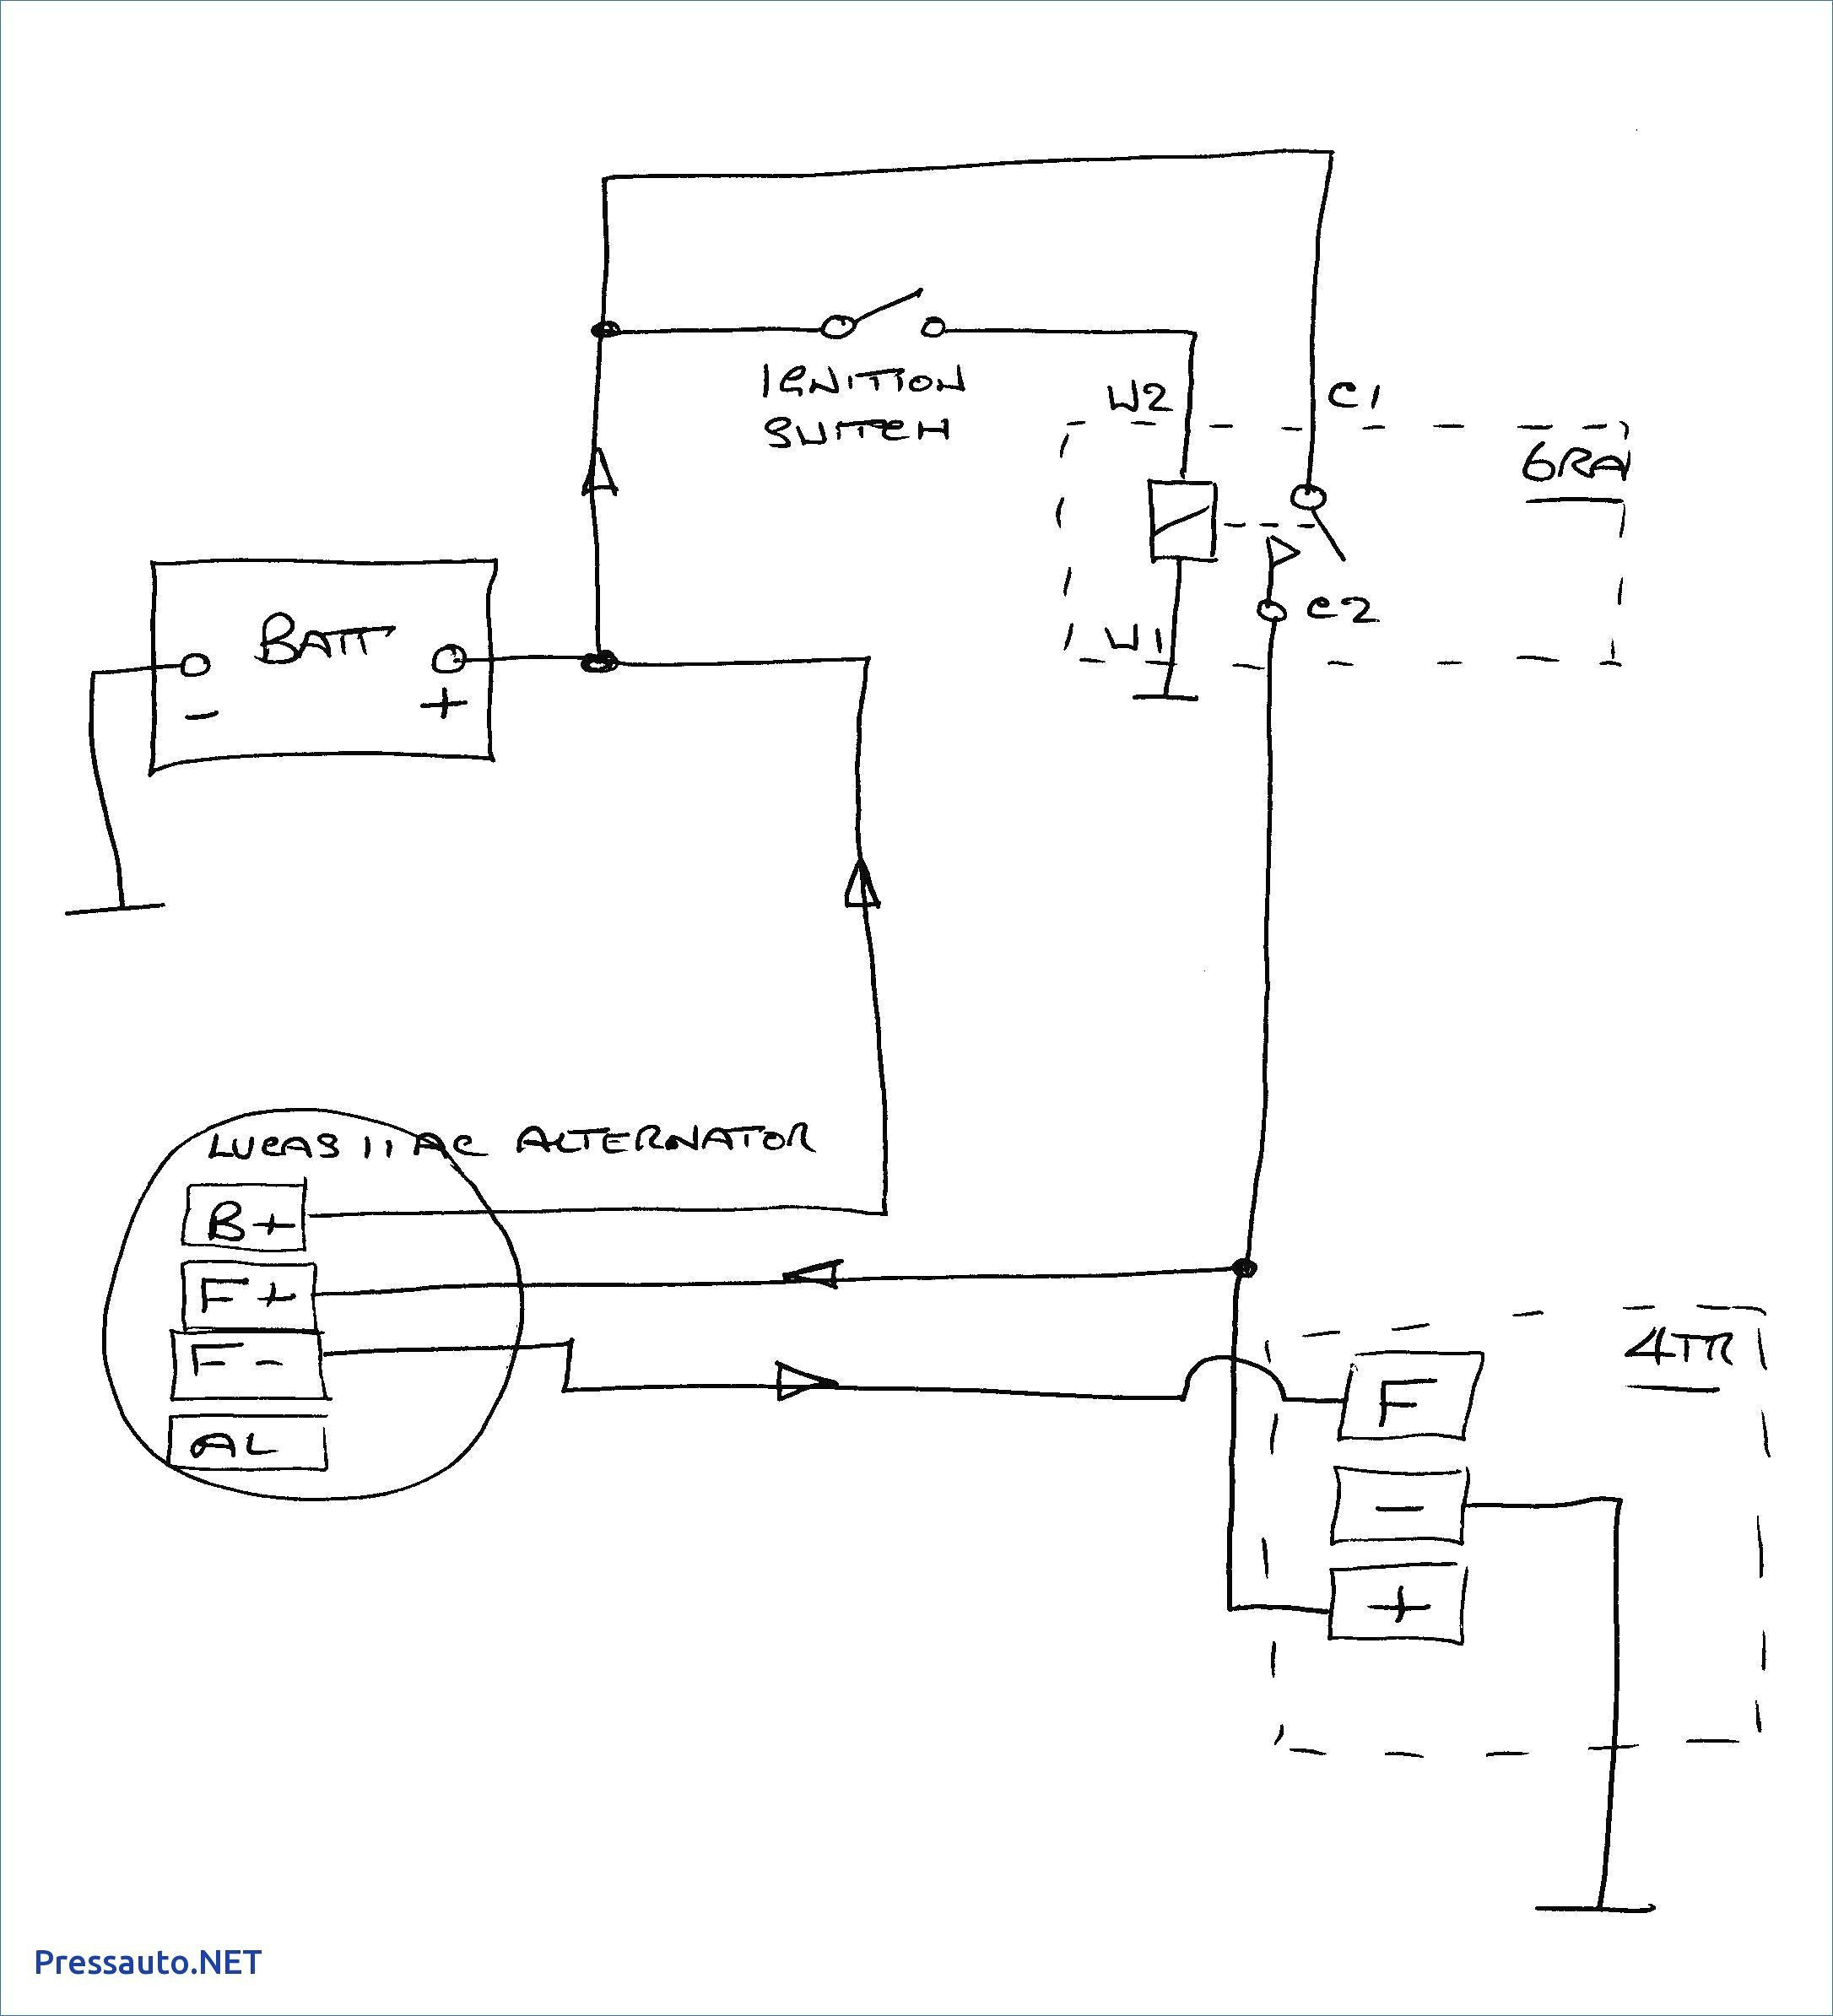 Gm 3 Wire Alternator Wiring Diagram | Wiring Diagram - Gm 3 Wire Alternator Wiring Diagram